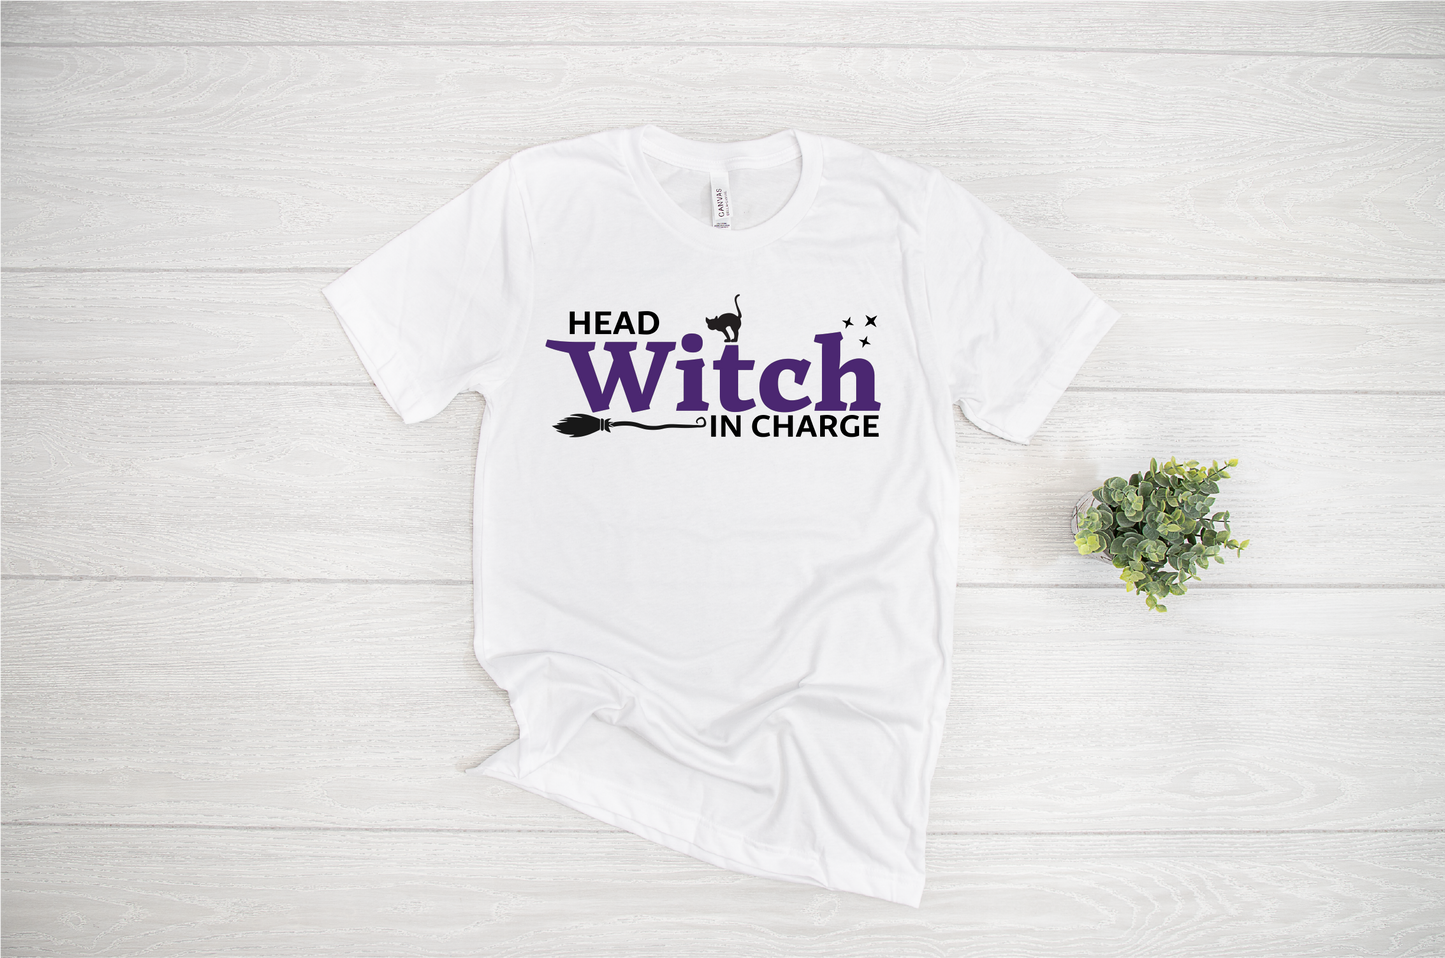 Basic Witch SVG